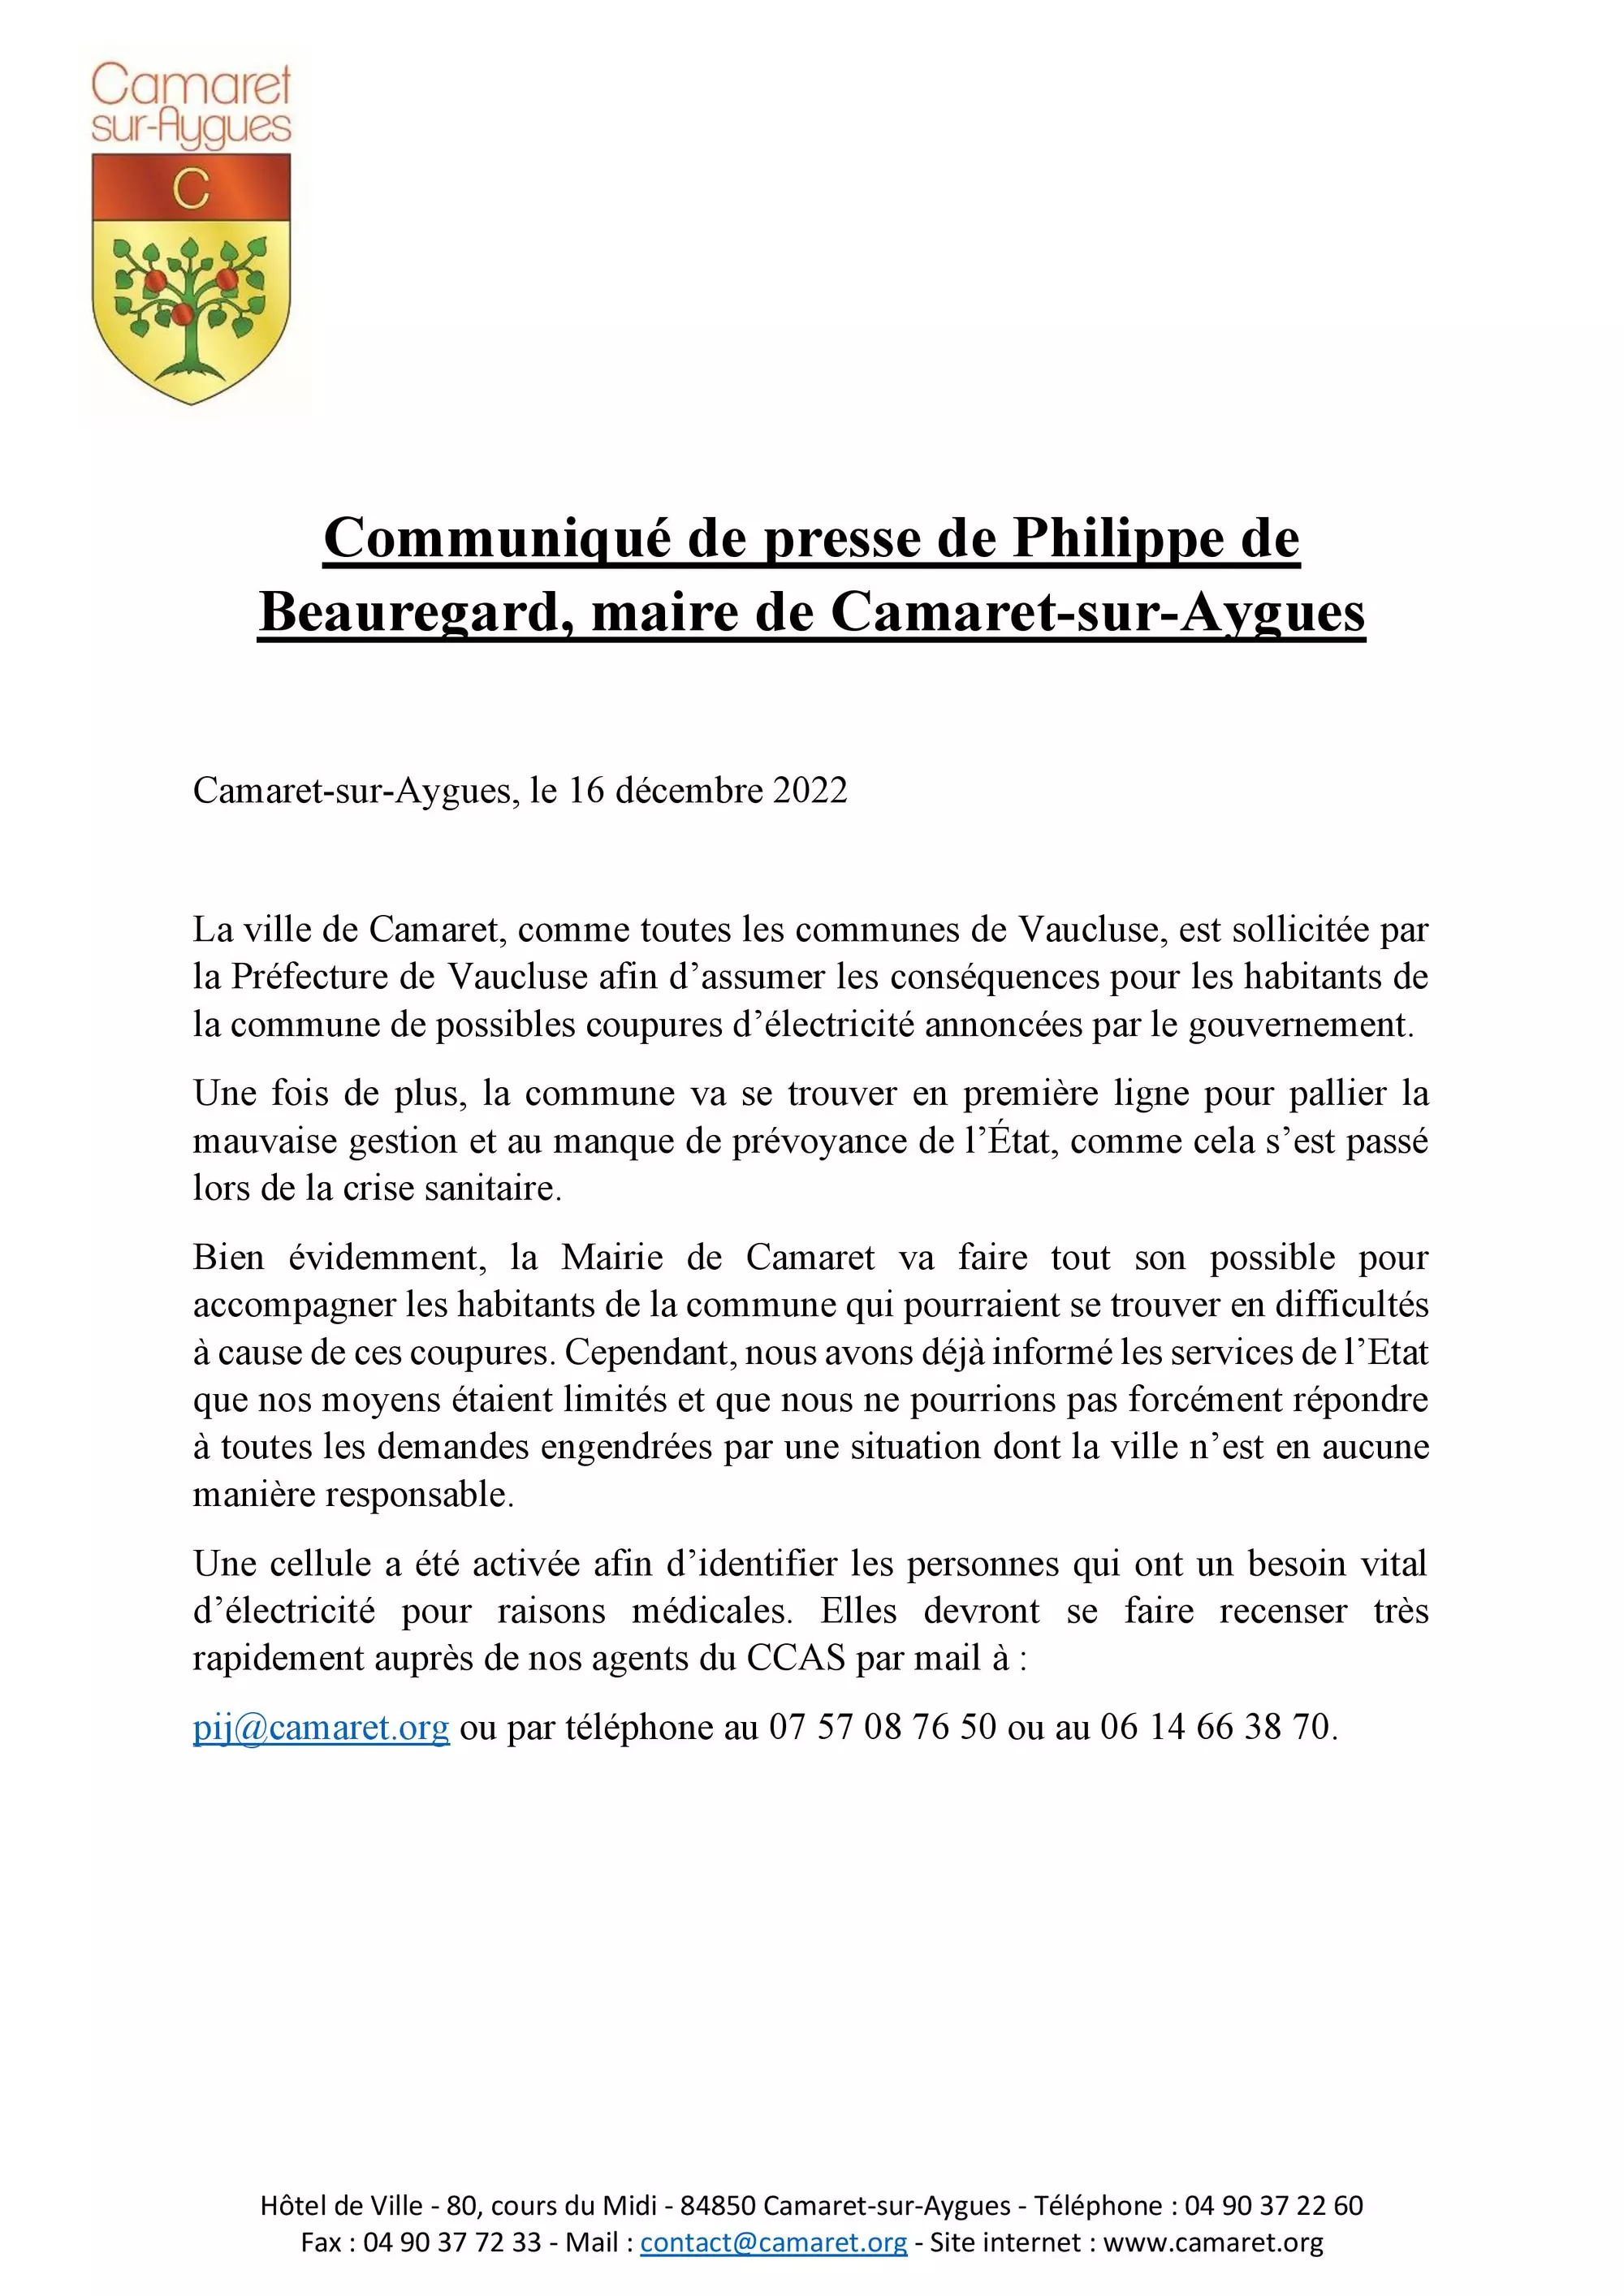 Communiqué de presse de Philippe de Beauregard, maire de Camaret-sur-Aygues